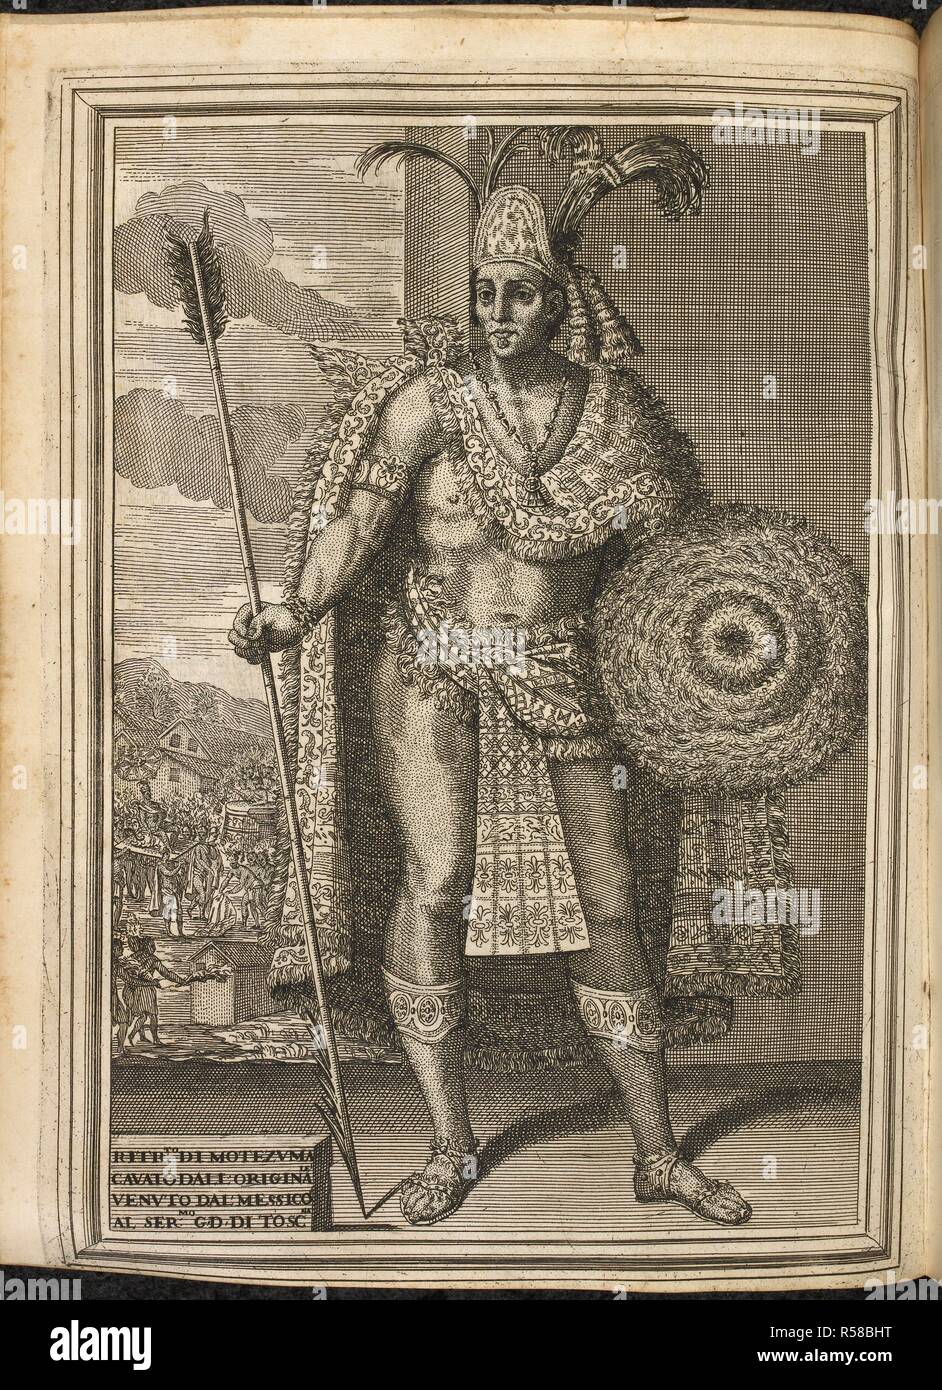 Moctezuma II (C. 1466 â € "29. Juni 1520), auch eine Reihe von Variante Schreibweisen einschließlich Montezuma, Moteuczoma, Motecuhzoma bekannt und in vollem Umfang durch frühen Nahuatl Texte als Motecuhzoma Xocoyotzin (Moctezuma die Jungen). Er wurde während der ersten Phase der Spanischen Eroberung Mexikos, wenn Eroberer HernÃ¡n CortÃ©s und seine Männer kämpften von der Aztekenhauptstadt Tenochtitlan zu entkommen getötet. Istoria della Conquista del Messico... scritta in Castigliano... e tradotta in Toscano da un'Accademico della Crusca [F. Corsini]. Firenze, 1690. Quelle: 1446 k. 18, Seite 299. Thema: Solis y Ribad Stockfoto